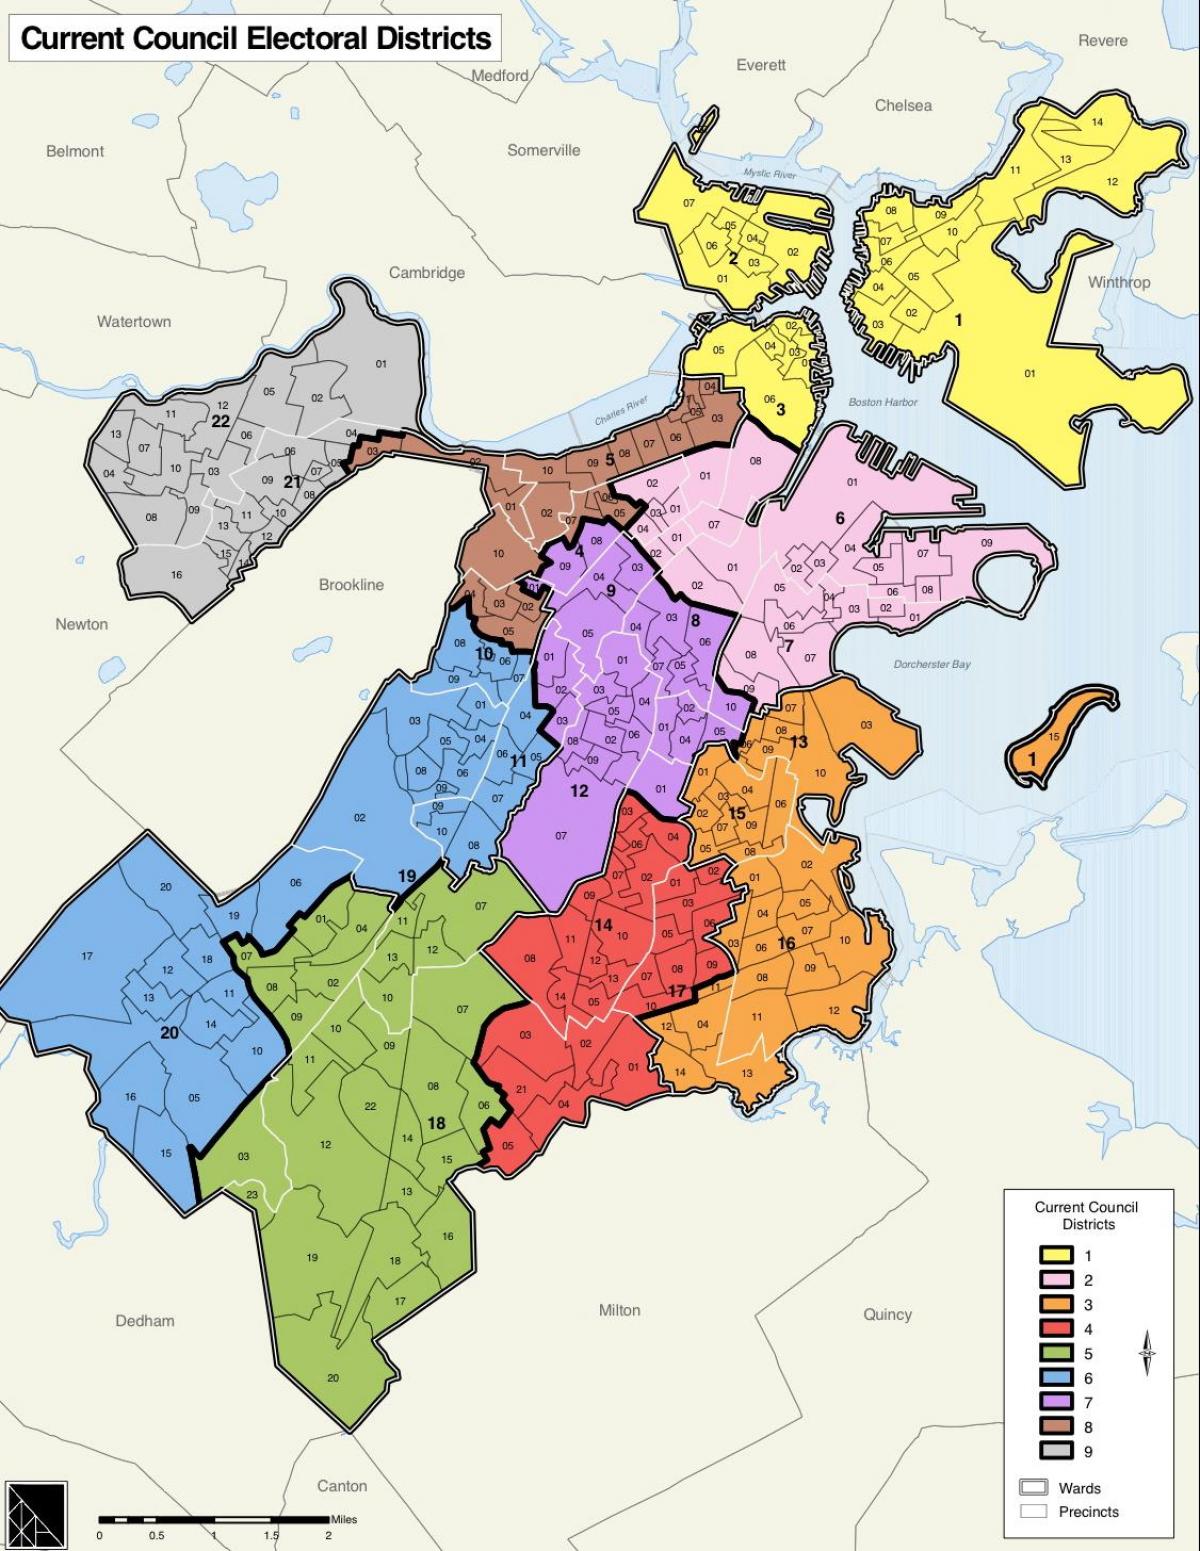 خريطة منطقة بوسطن